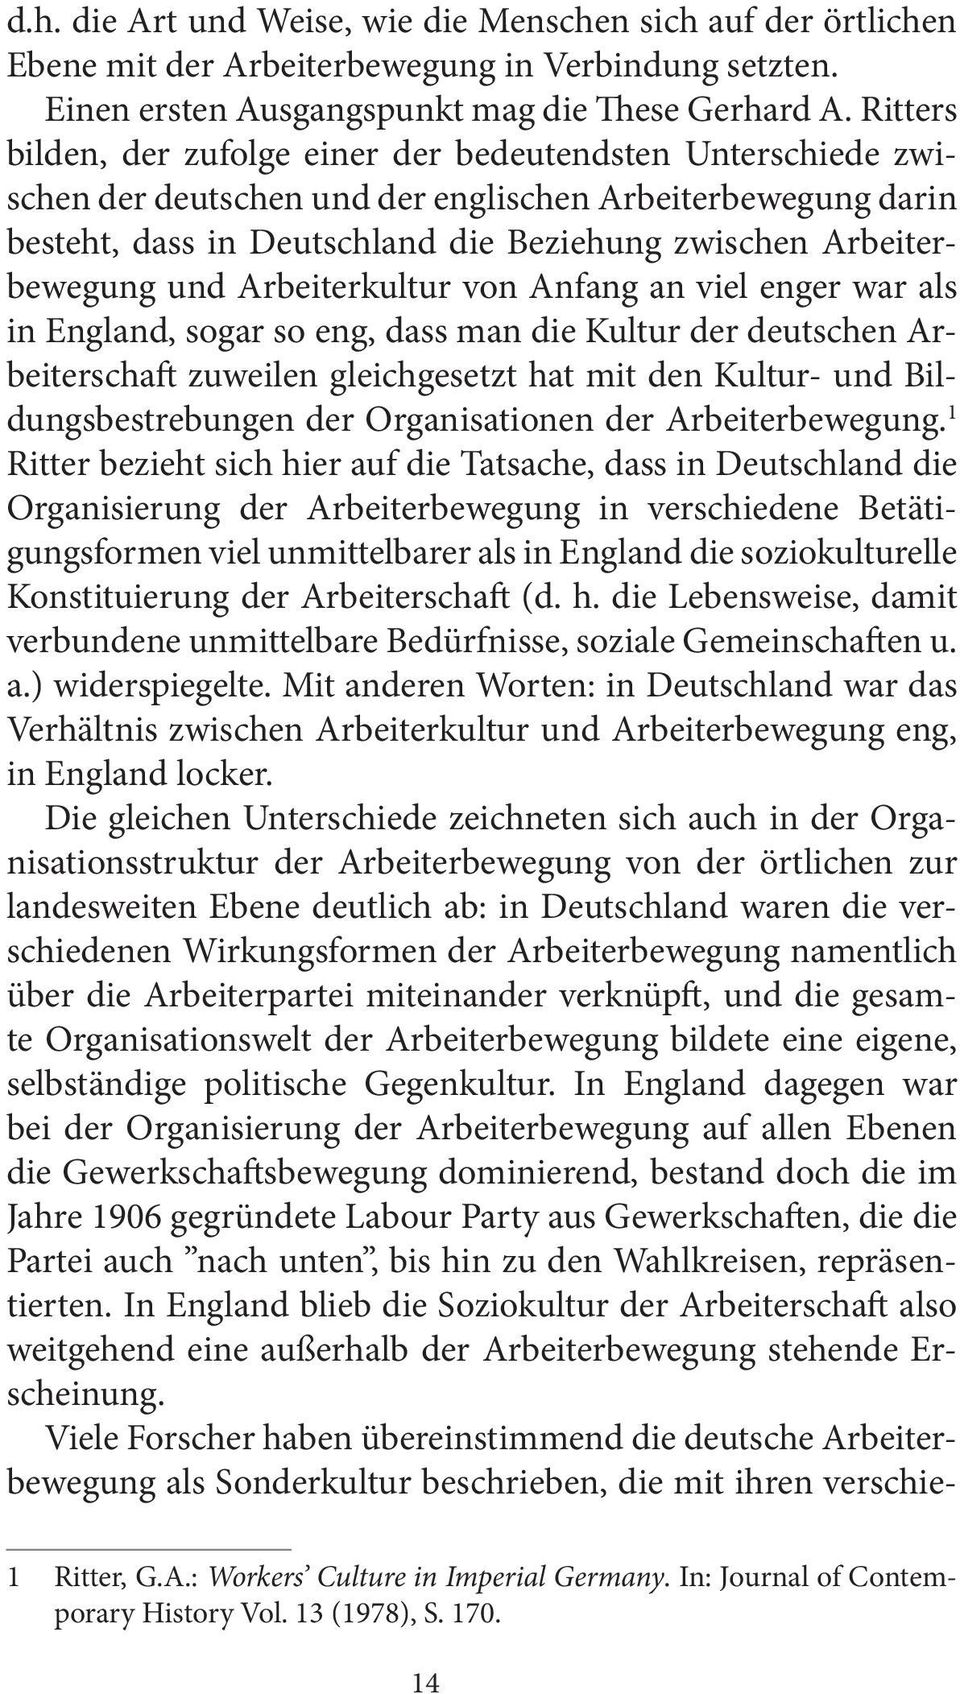 und Arbeiterkultur von Anfang an viel enger war als in England, sogar so eng, dass man die Kultur der deutschen Arbeiterschaft zuweilen gleichgesetzt hat mit den Kultur- und Bildungsbestrebungen der